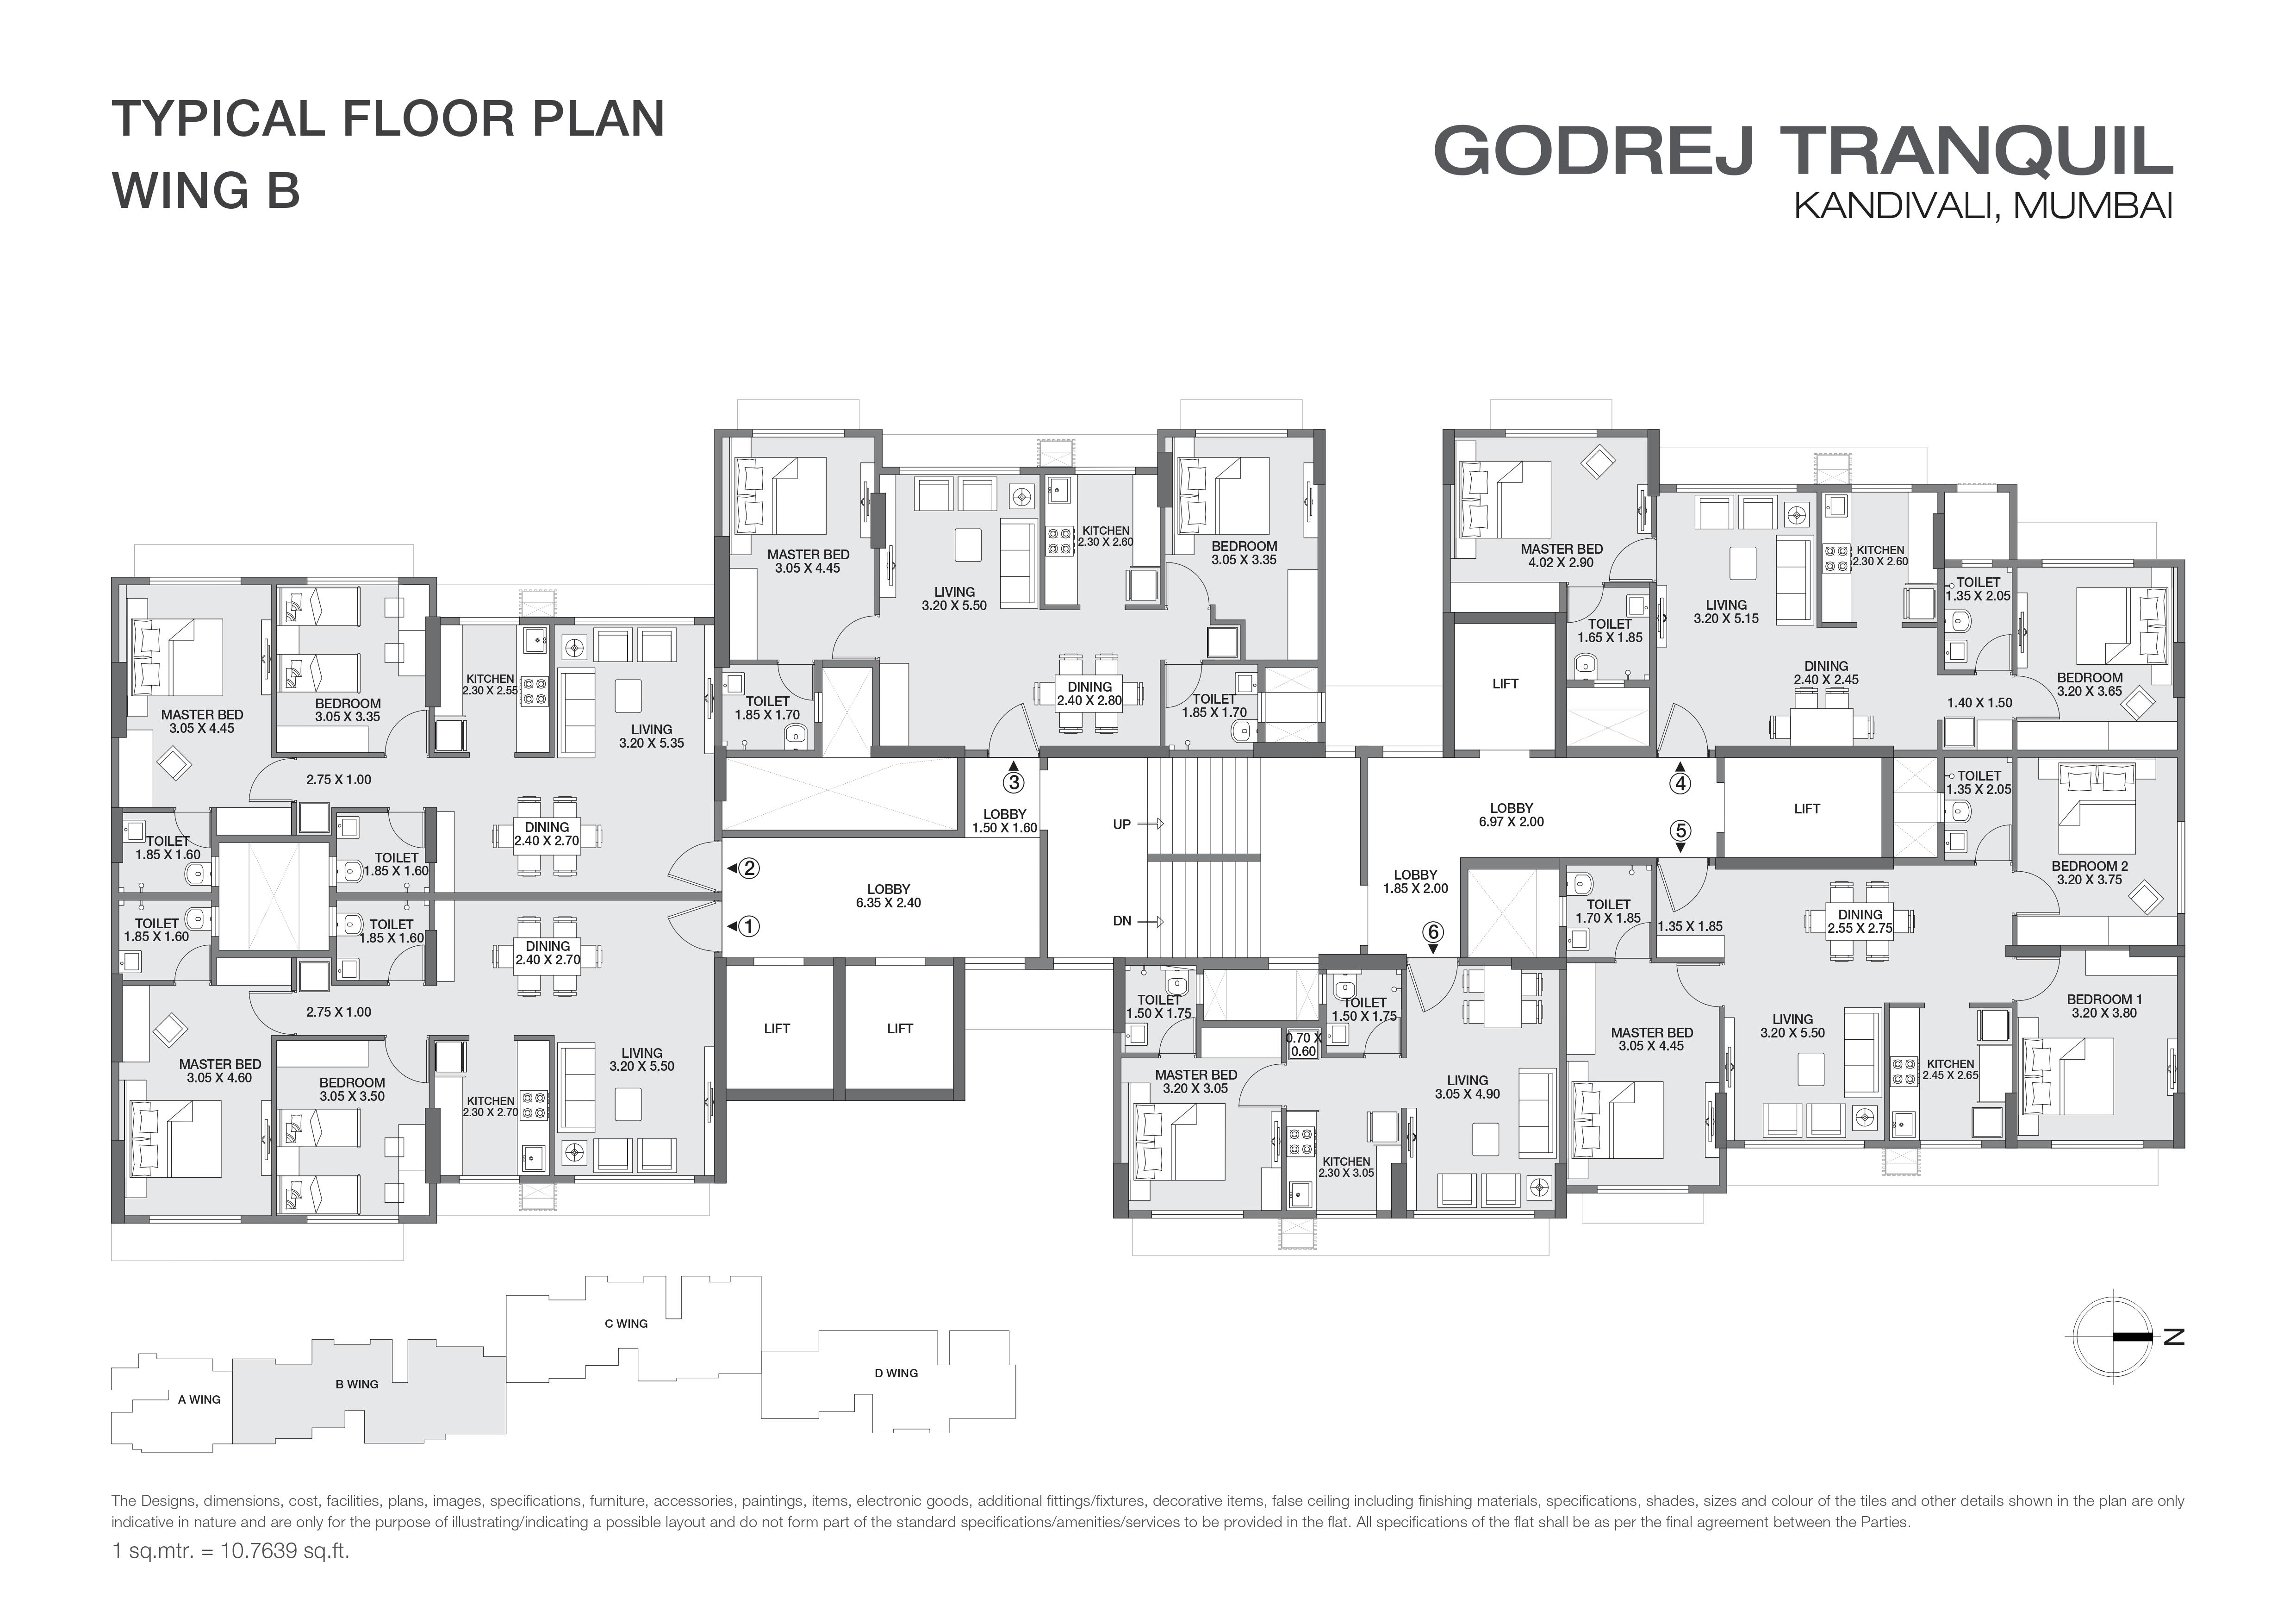 Wing B Floor Plan of Godrej Tranquil